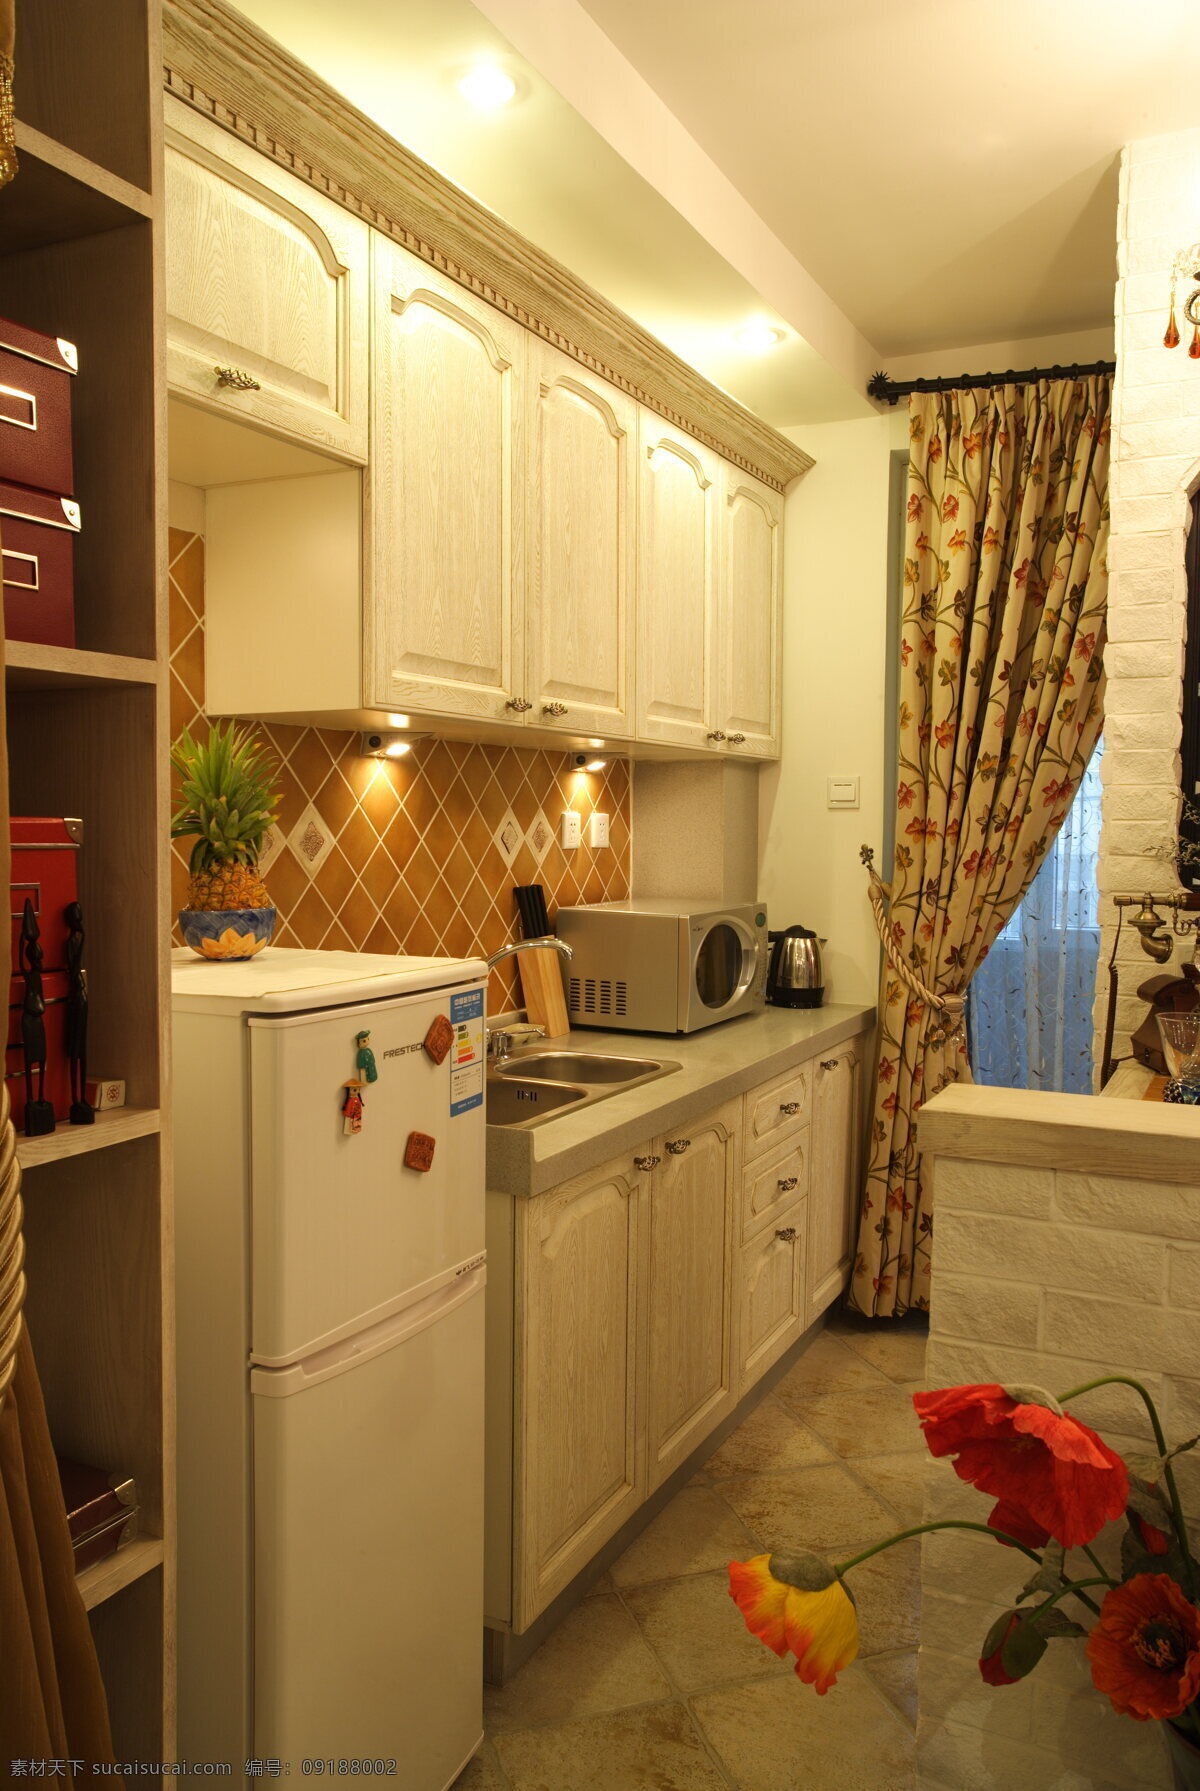 东南亚 沉稳 风格 开放式 厨房 装修 效果图 沉稳风格 大气 时尚 白色柜子 植物装饰